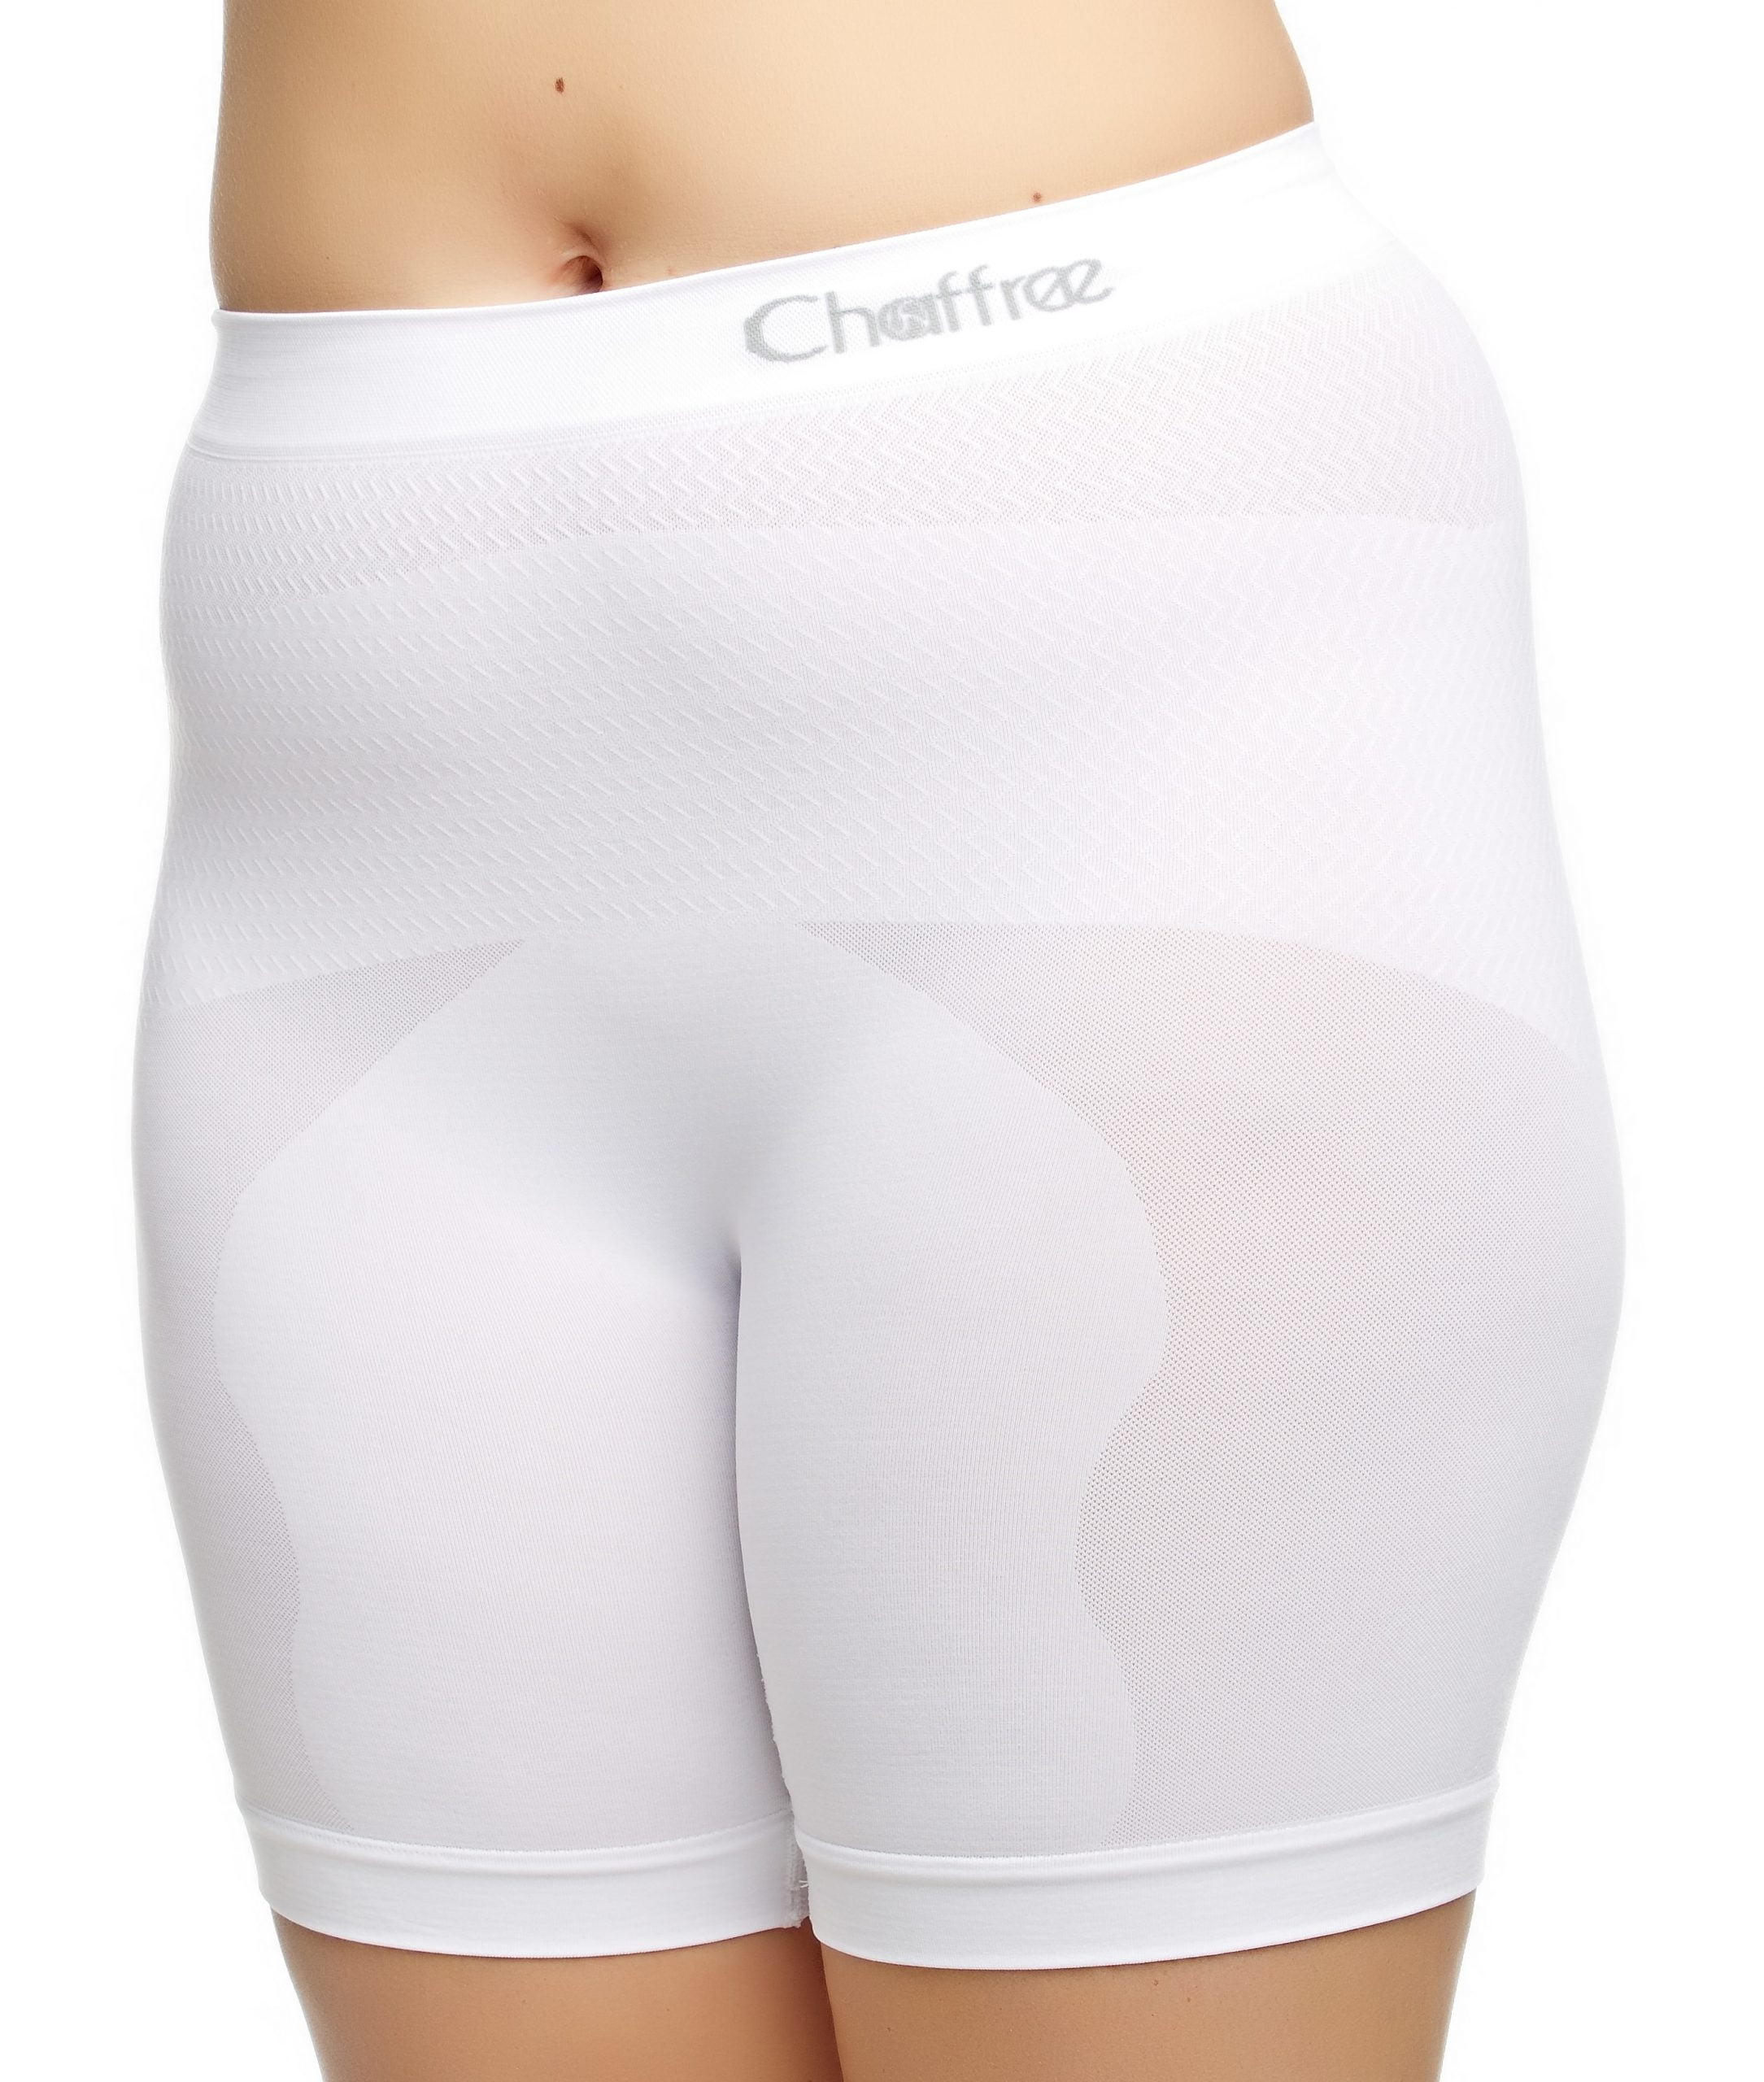 Women's Slip Shorts Anti Chafing Underwear Cotton Stretch